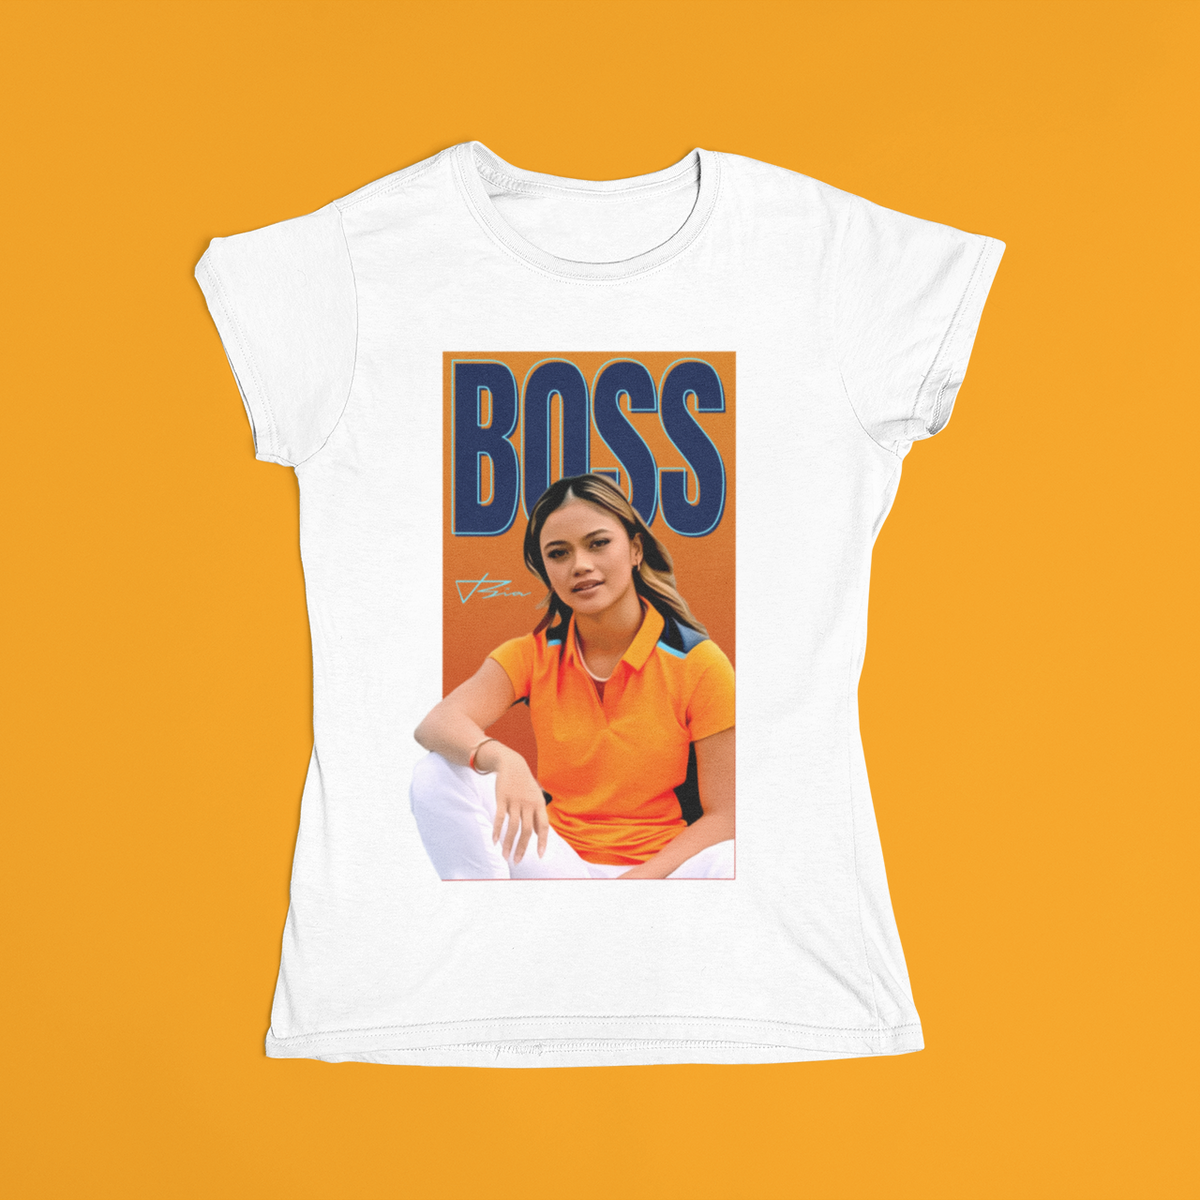 Nome do produto: Babylook Girl Boss Collection Bianca Bustamante